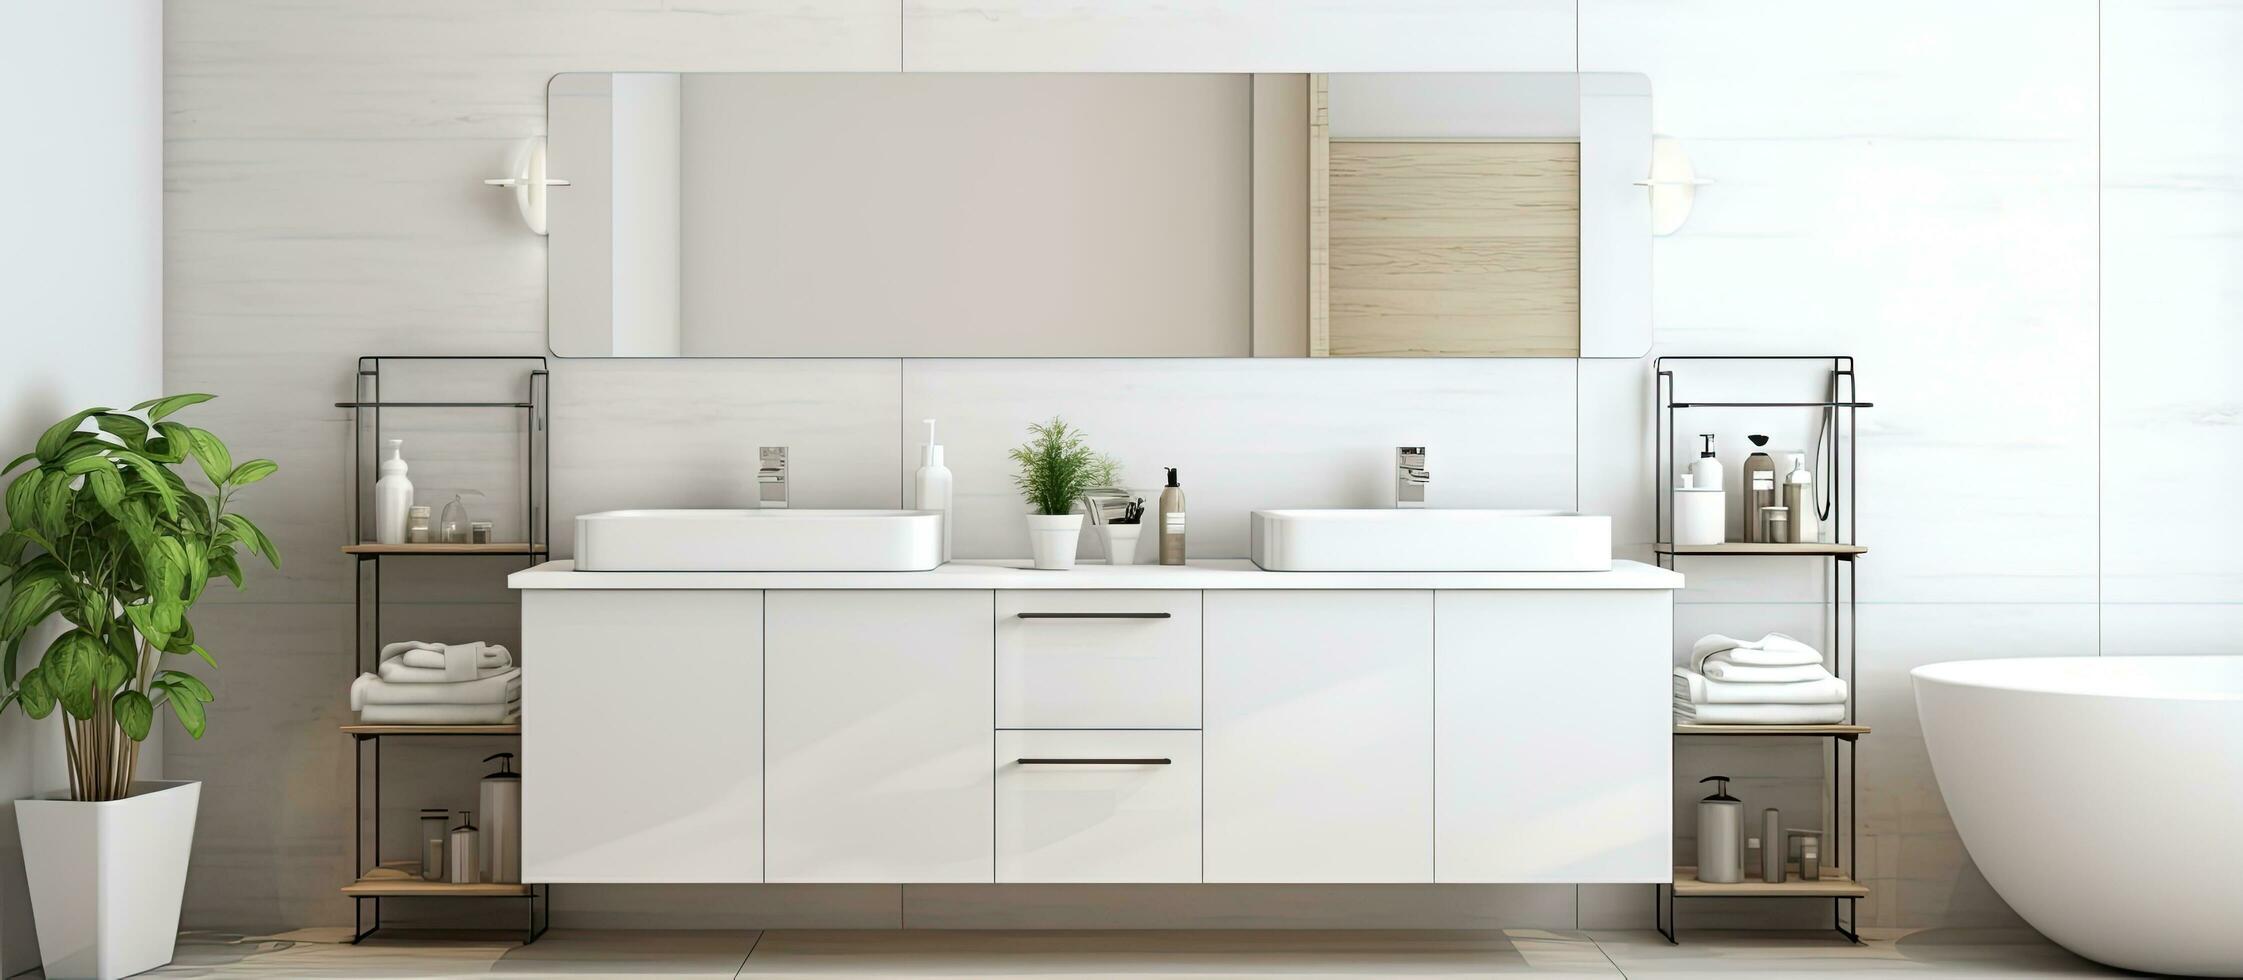 modern Zuhause mit Licht und geräumig Badezimmer mit Weiß Keramik sinkt Spiegel und Glas Türen foto